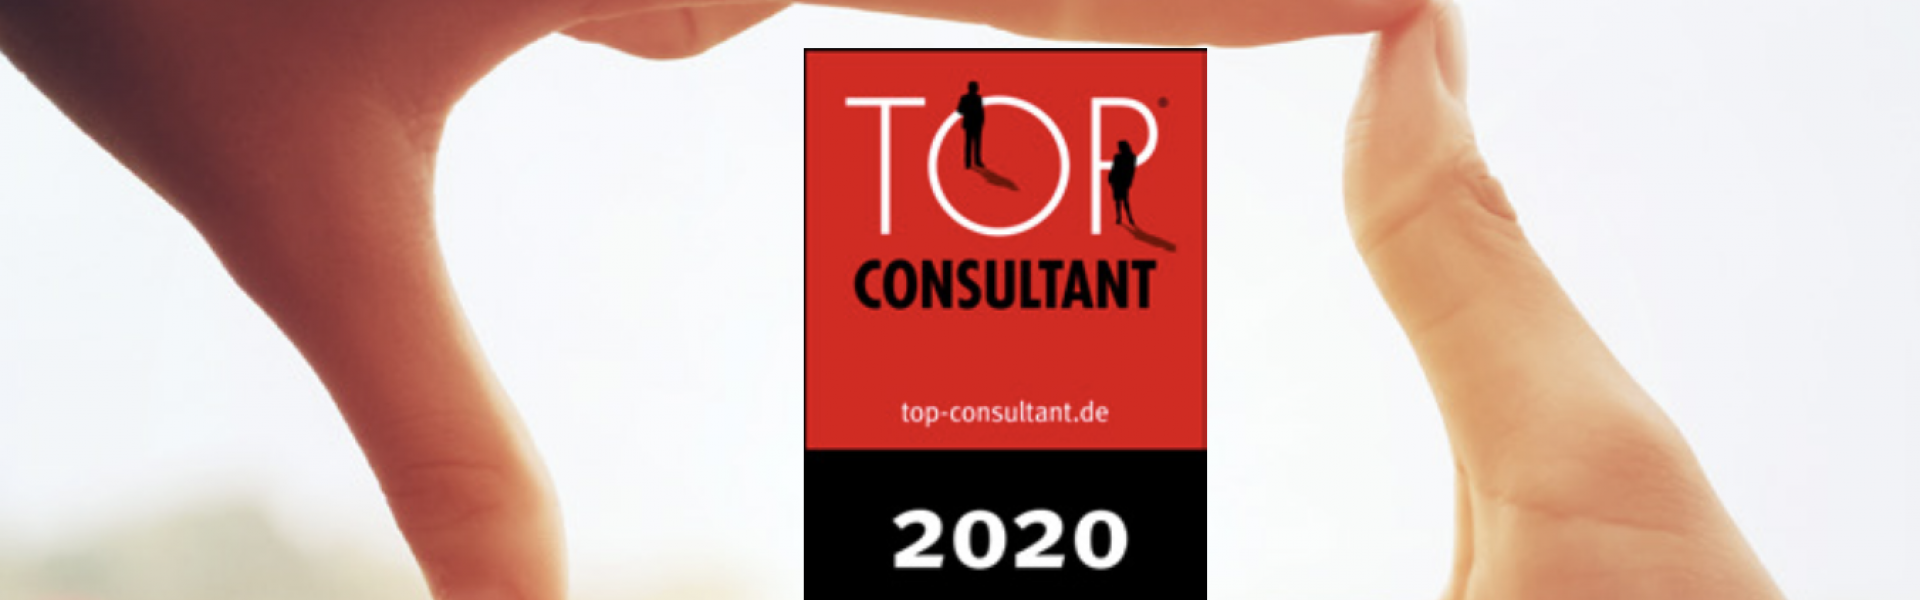 Top-Consultant